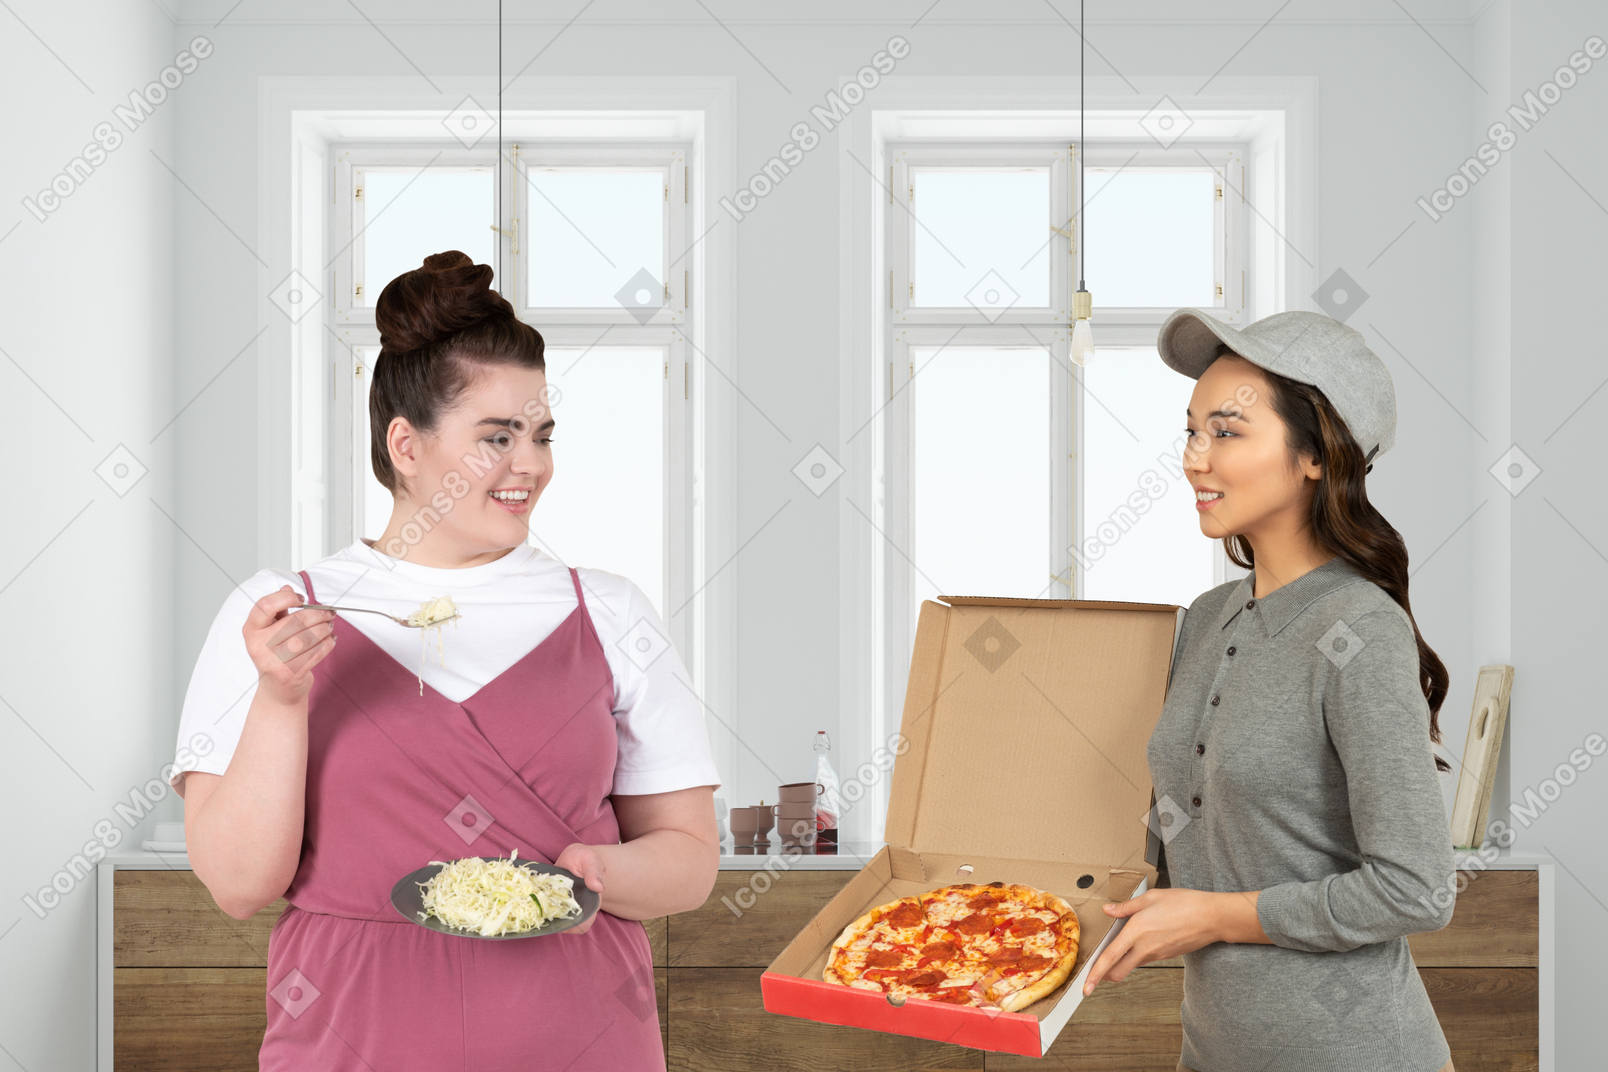 Una donna più grande con un piatto di insalata, salutando una ragazza delle consegne che le ha portato una scatola di pizza